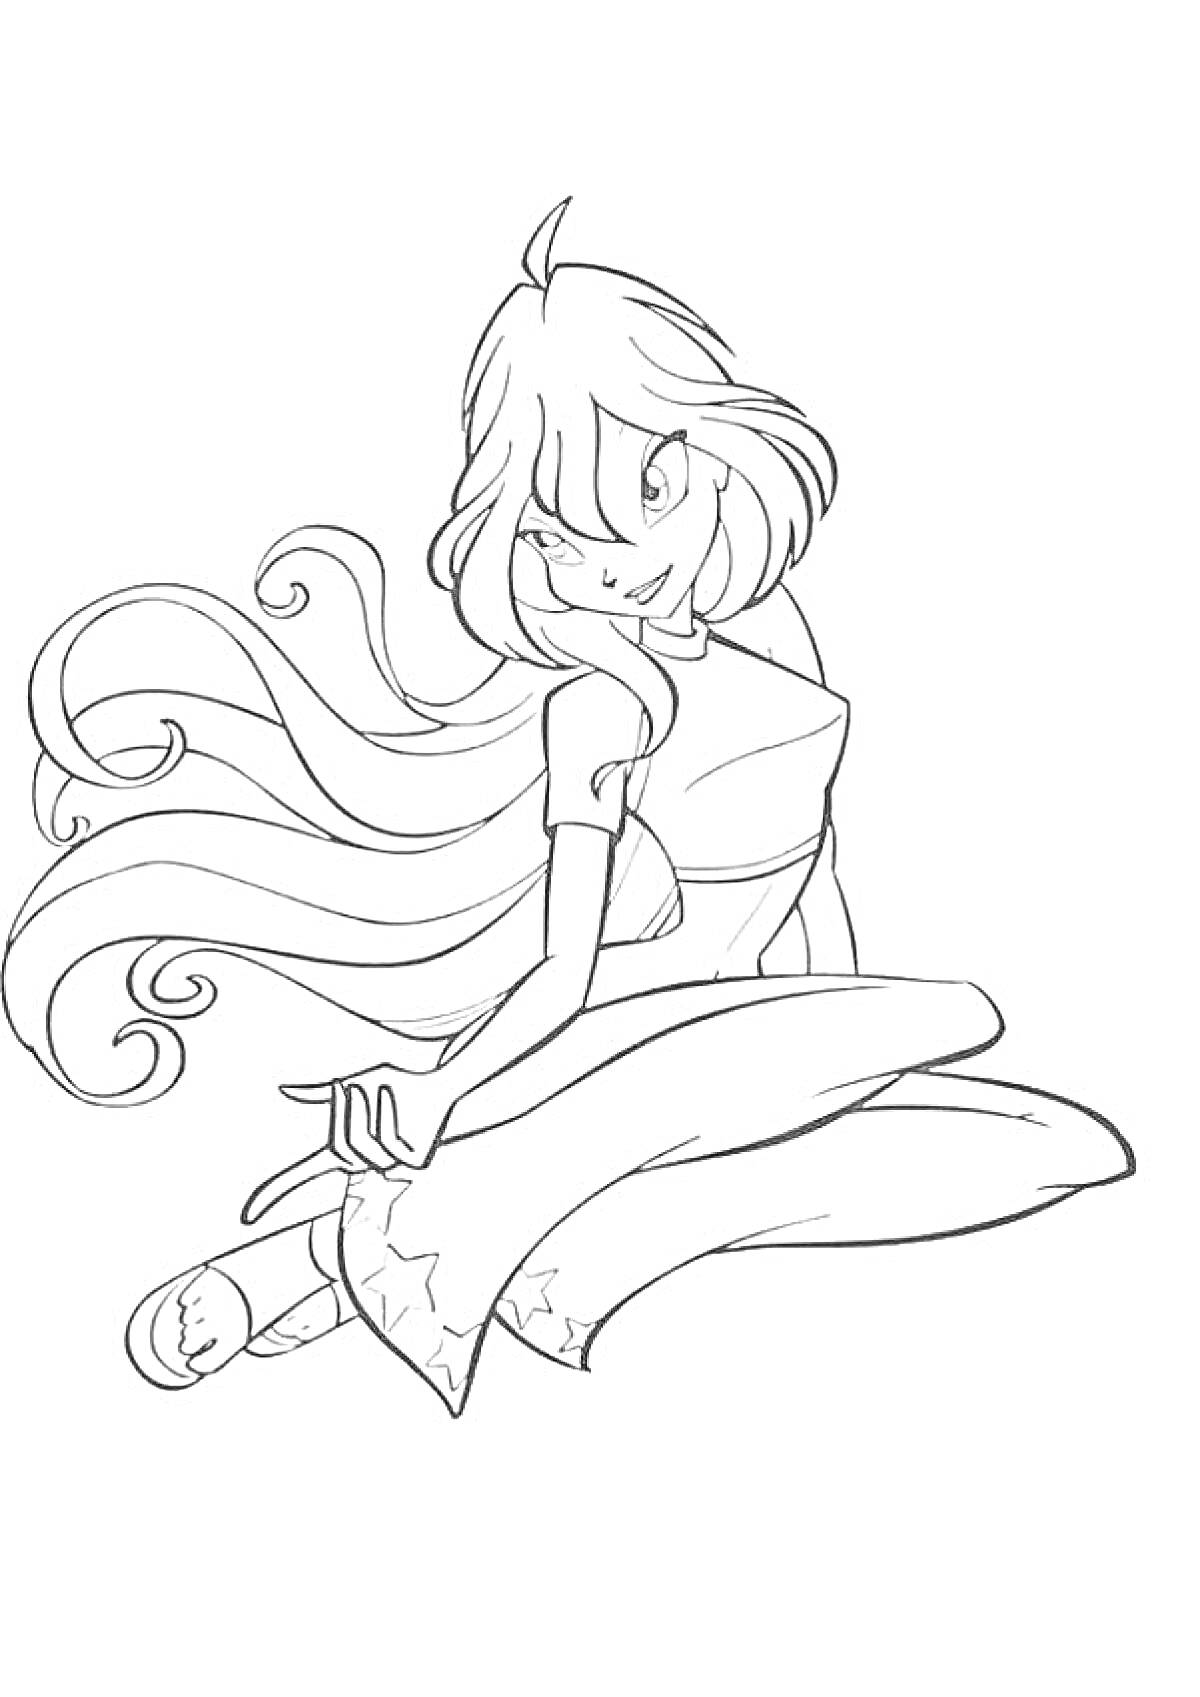 Винкс Блум в платье с длинными волосами, сидящая на коленях с вытянутой ногой